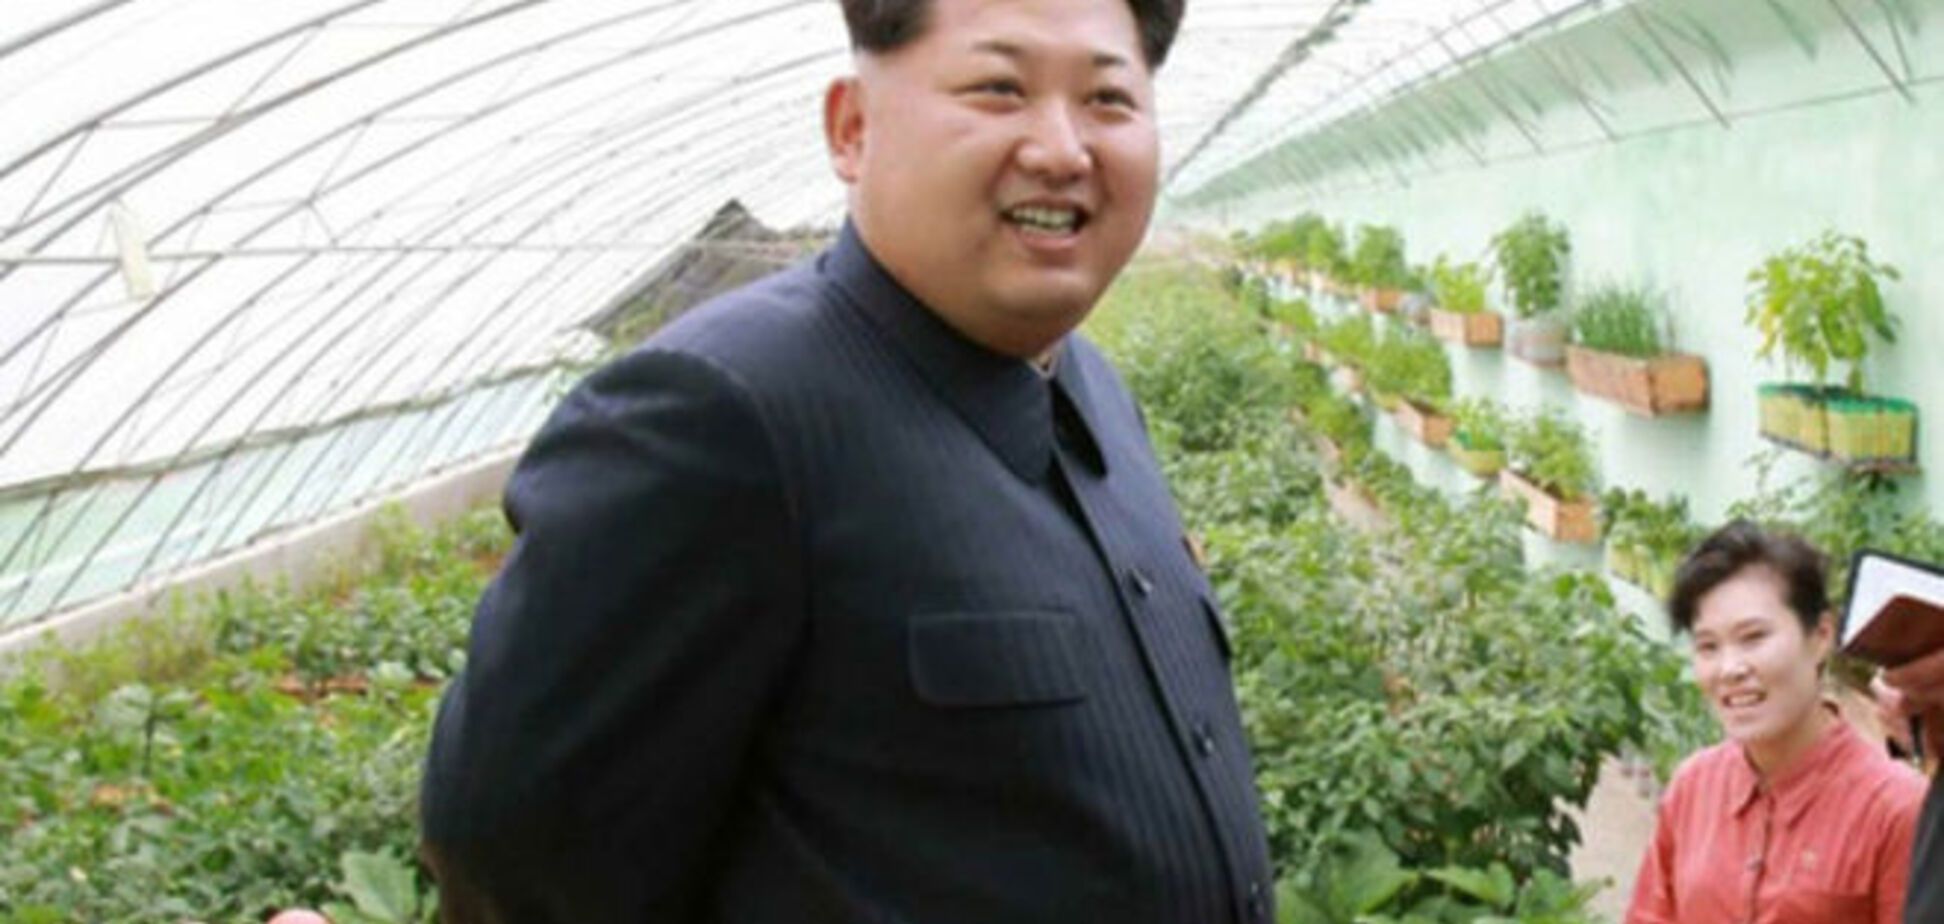 Ким Чен Ын готовится к войне с США и Южной Кореей - СМИ